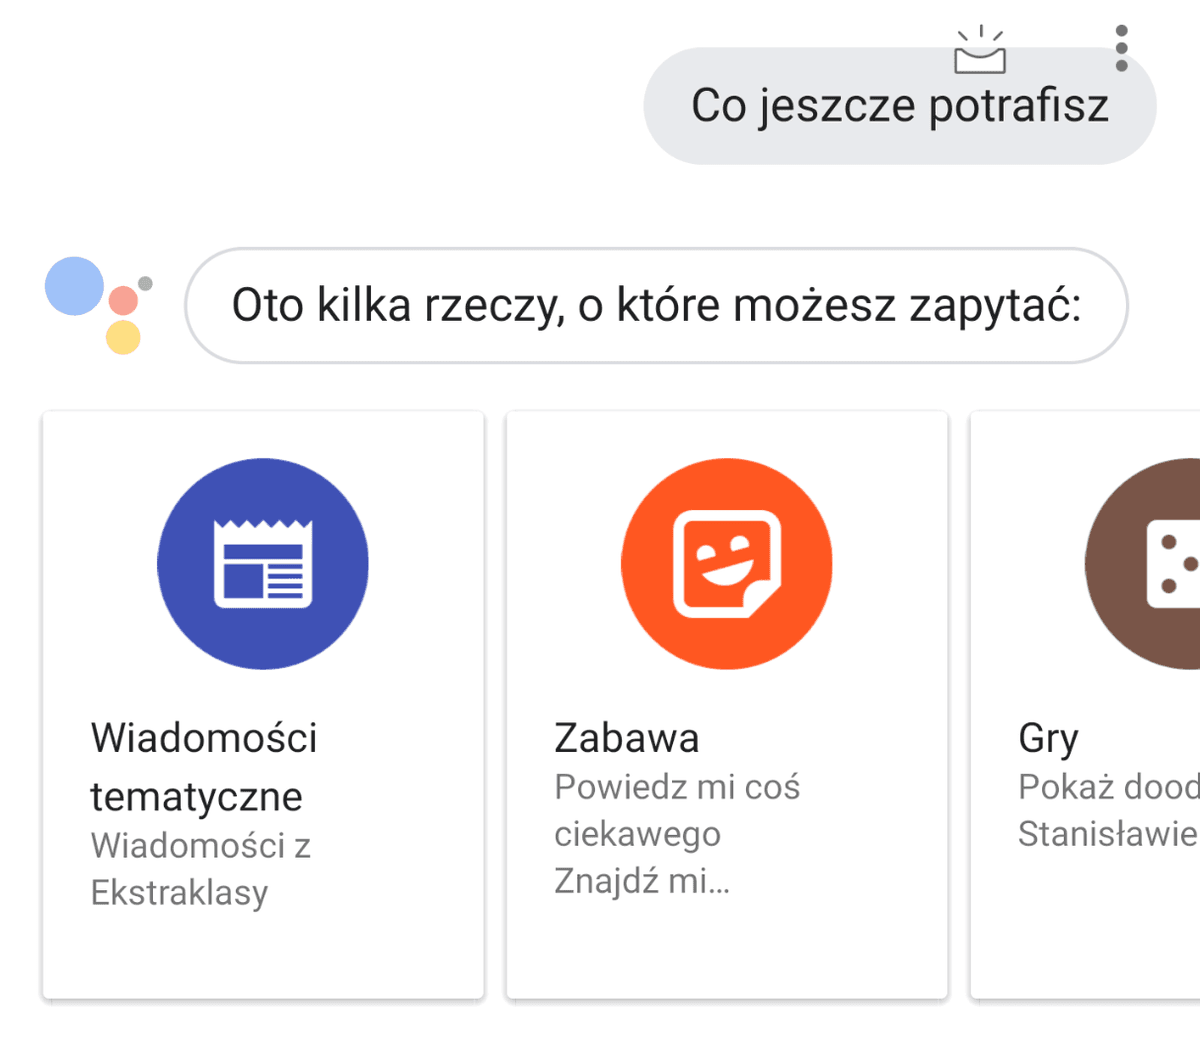 Jak działa Asystent Google w języku polskim? class="wp-image-813617" 